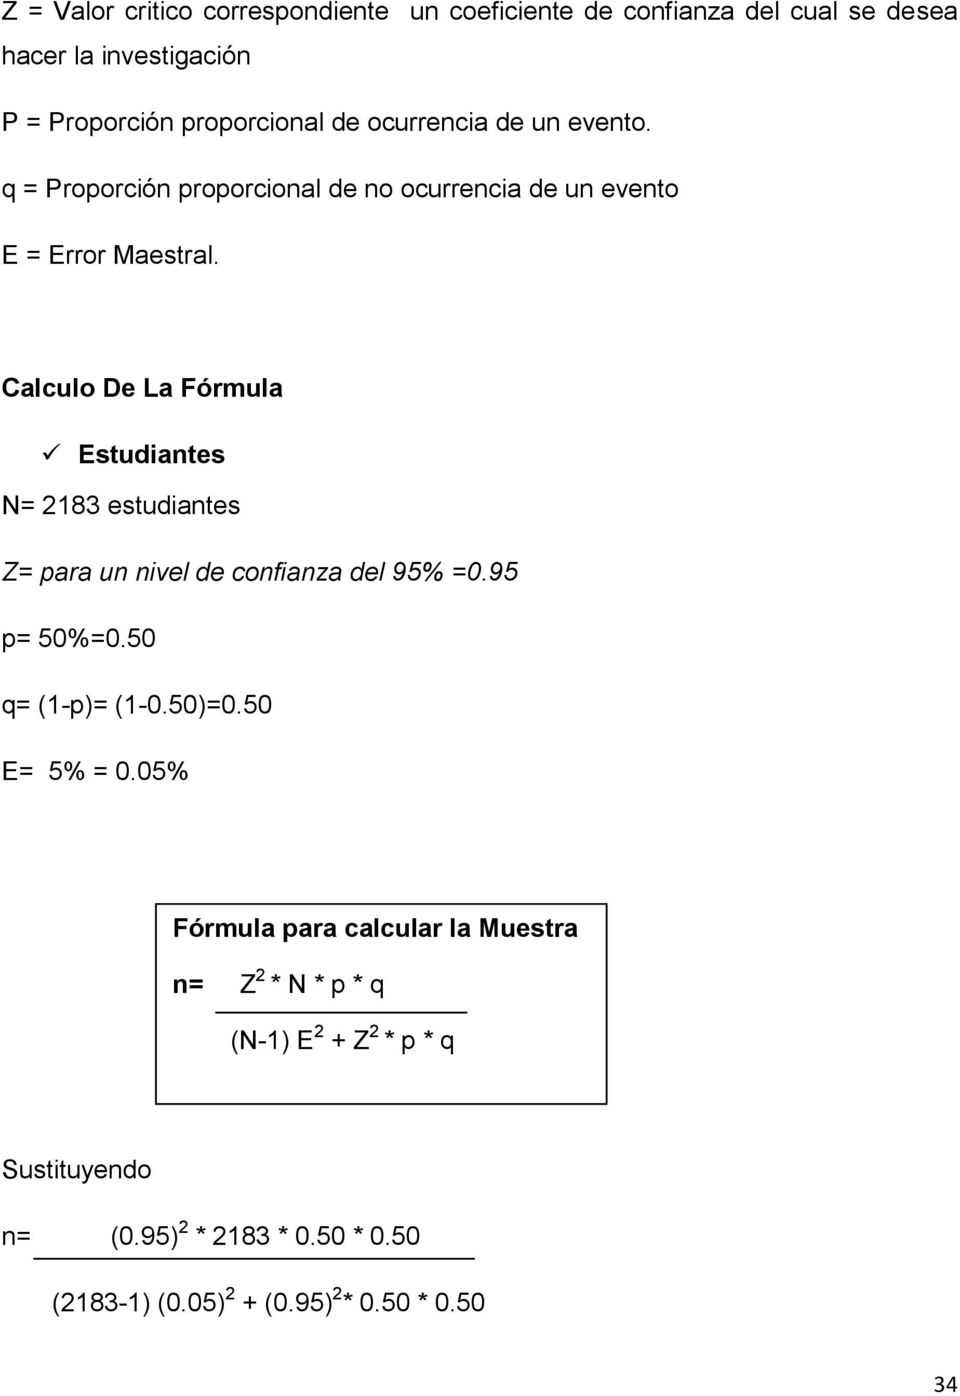 Calculo De La Fórmula Estudiantes N= 2183 estudiantes Z= para un nivel de confianza del 95% =0.95 p= 50%=0.50 q= (1-p)= (1-0.50)=0.